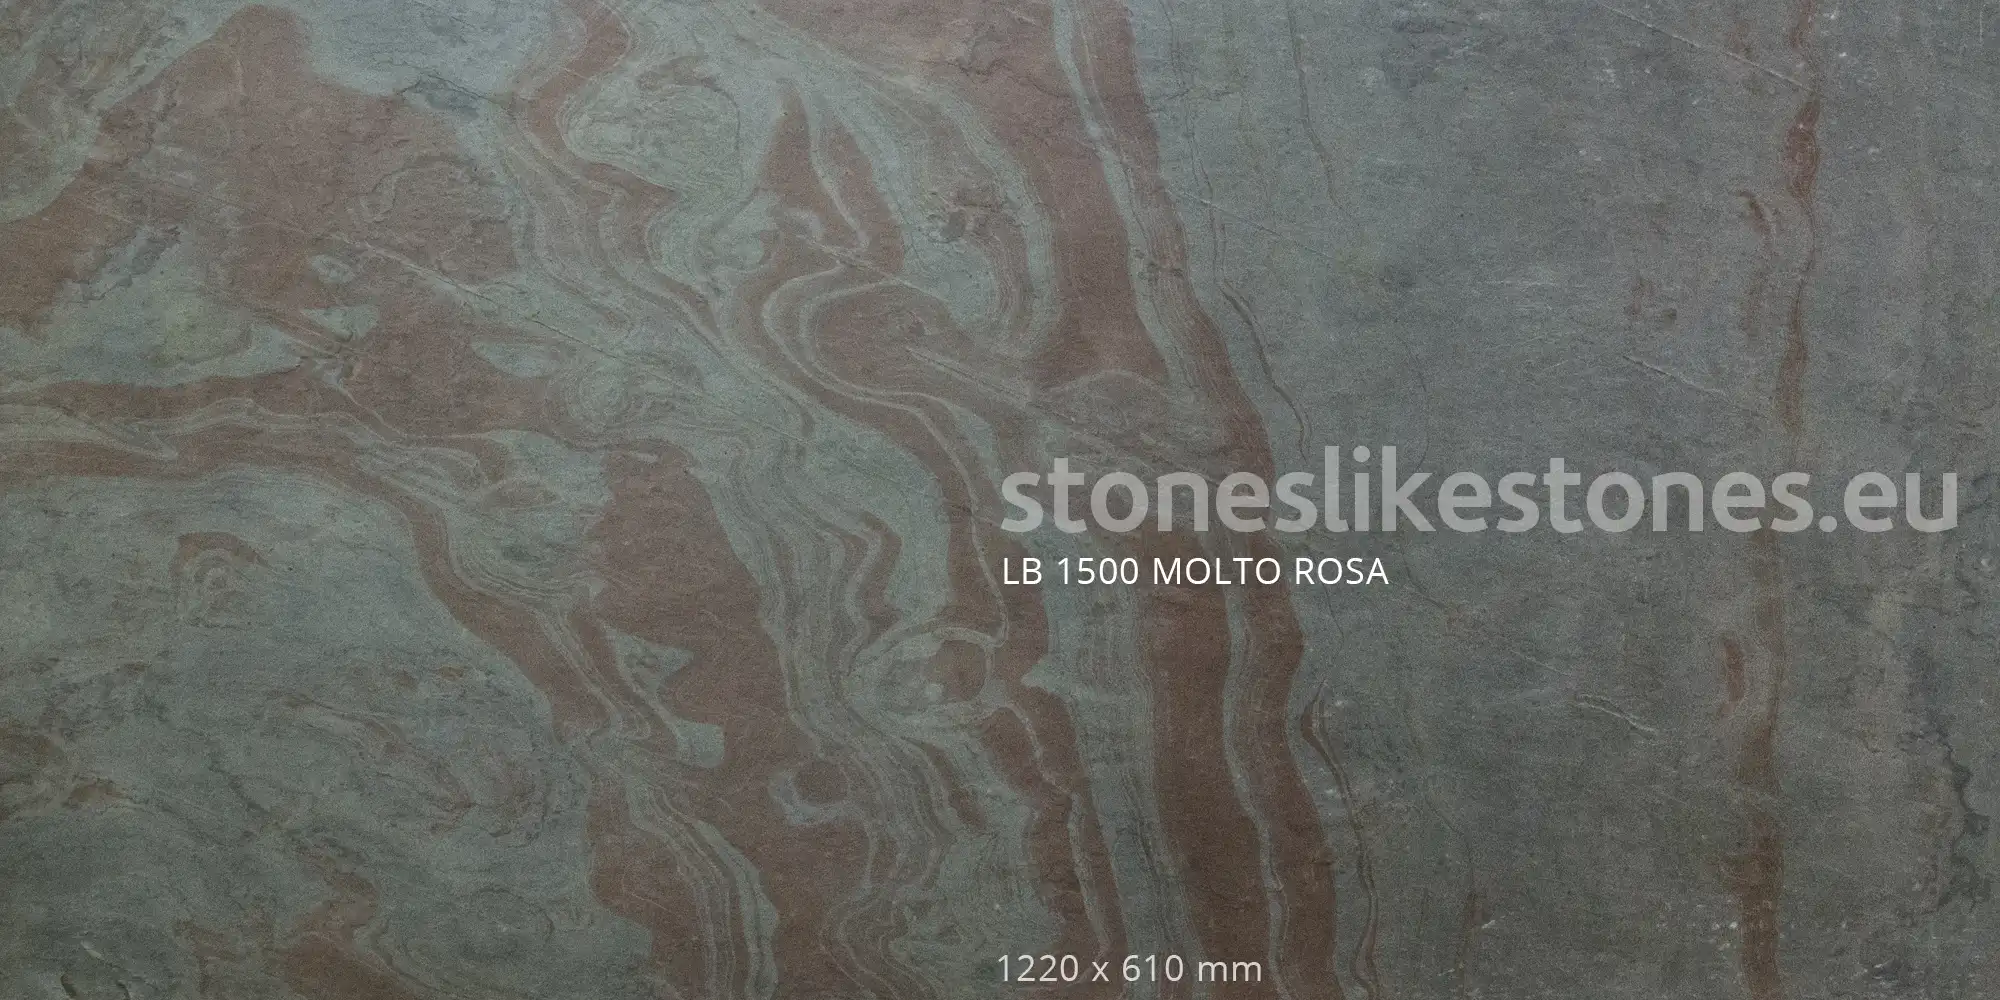 StoneslikeStones Dünnschiefer LB1500 MOLTO ROSA Buntschiefer – Download mit Rechtsklick